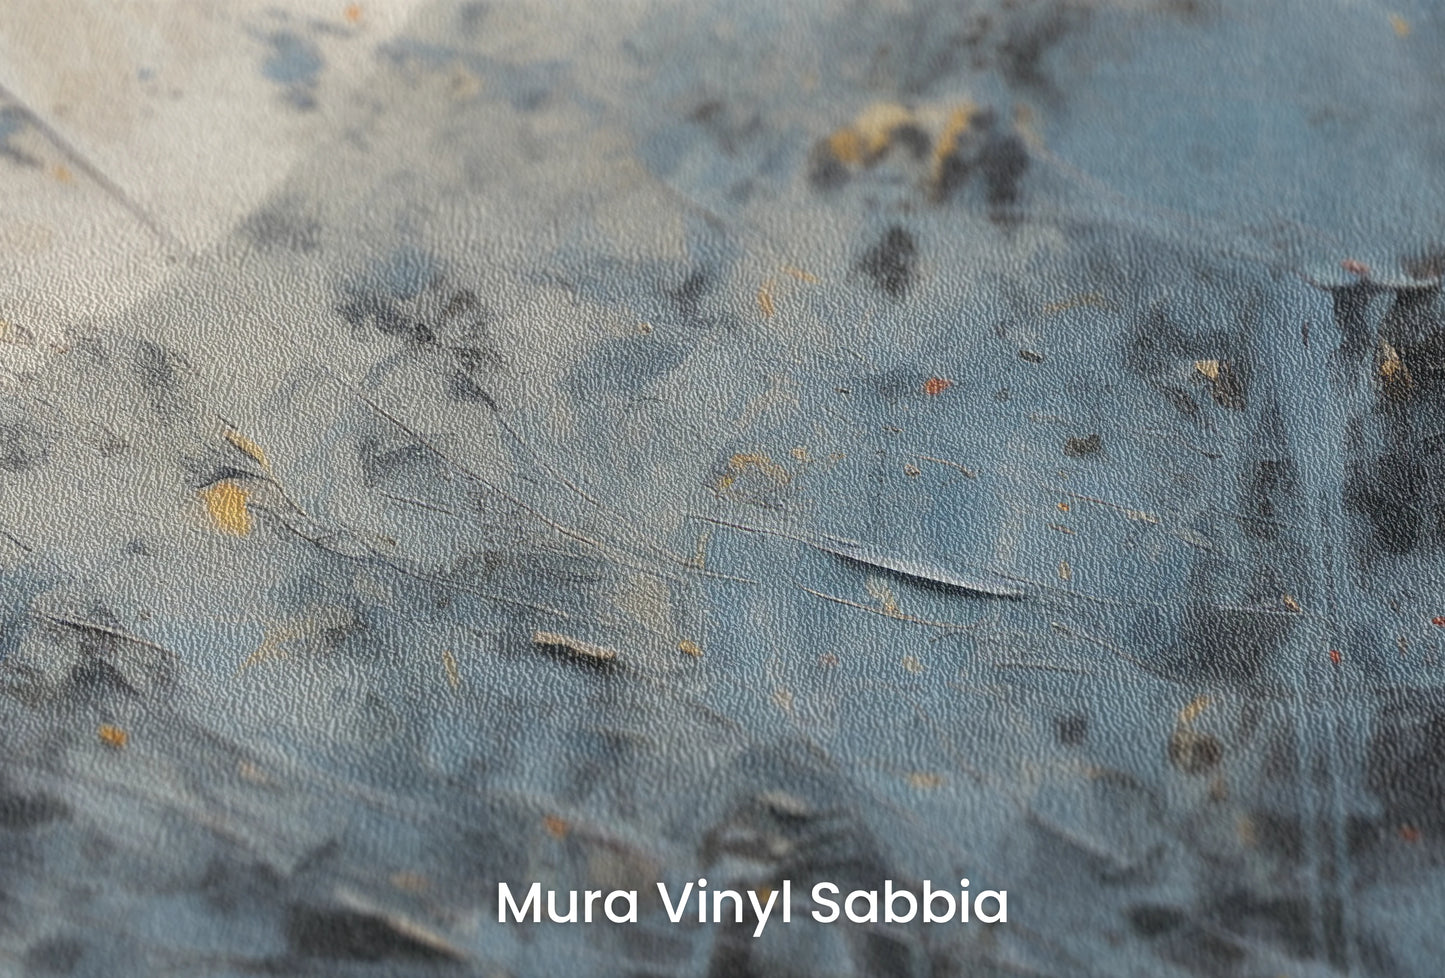 Zbliżenie na artystyczną fototapetę o nazwie Solar Flare #3 na podłożu Mura Vinyl Sabbia struktura grubego ziarna piasku.